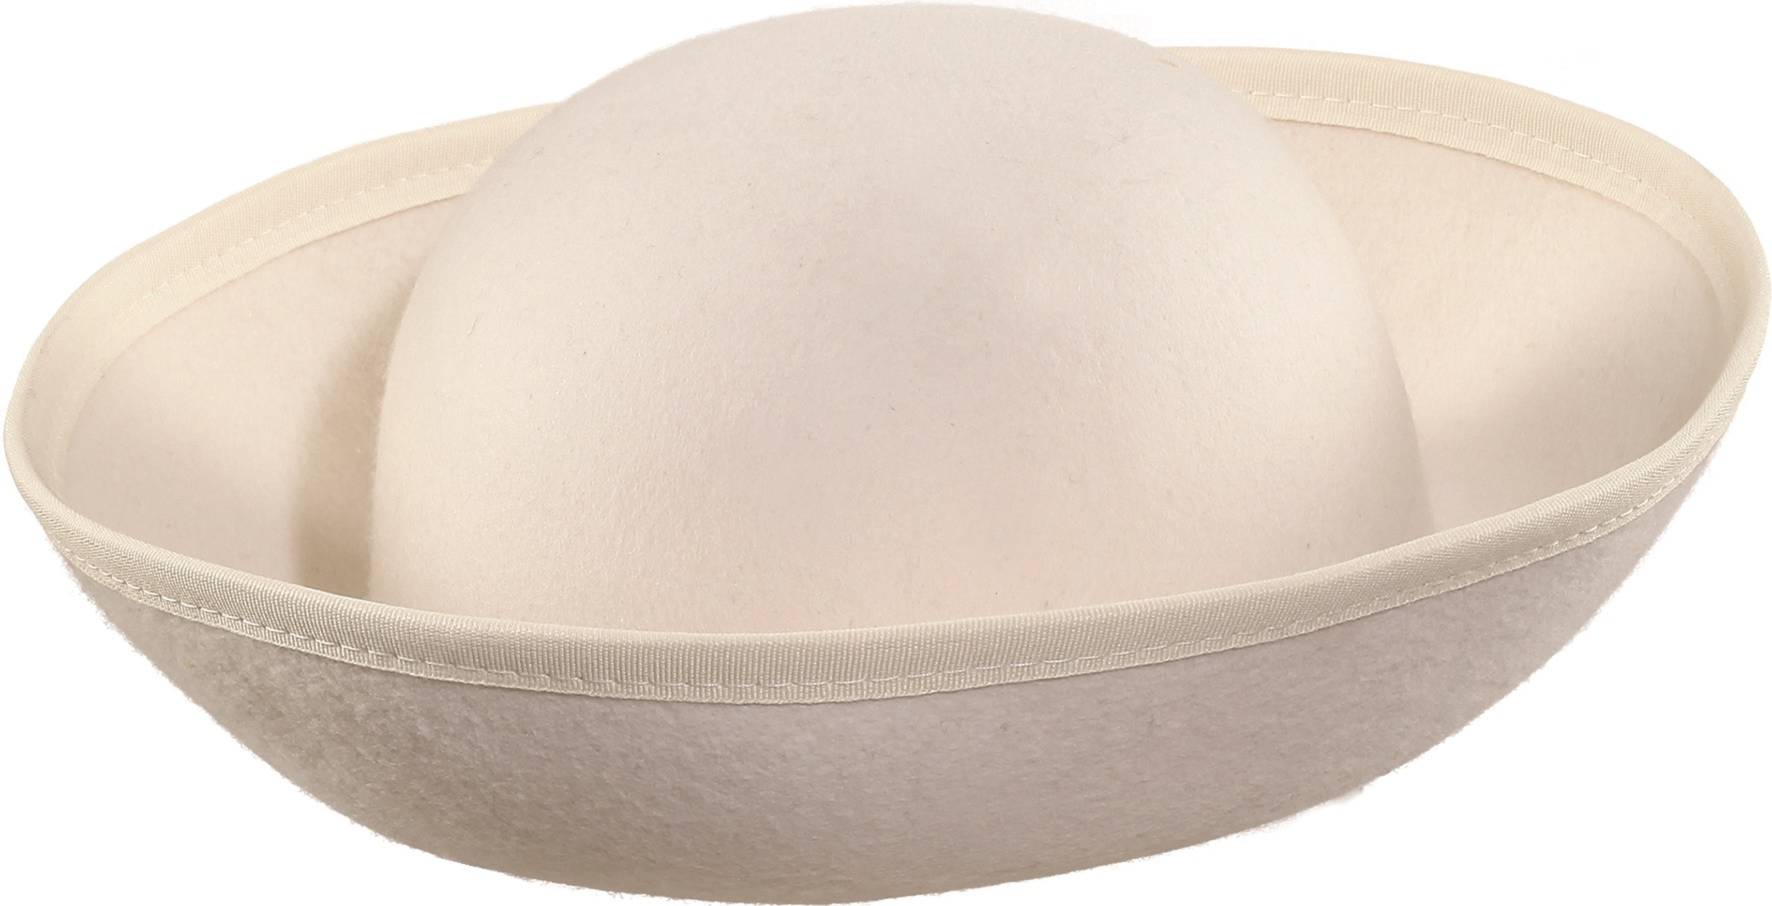 Tricorn hat, cream white - blank